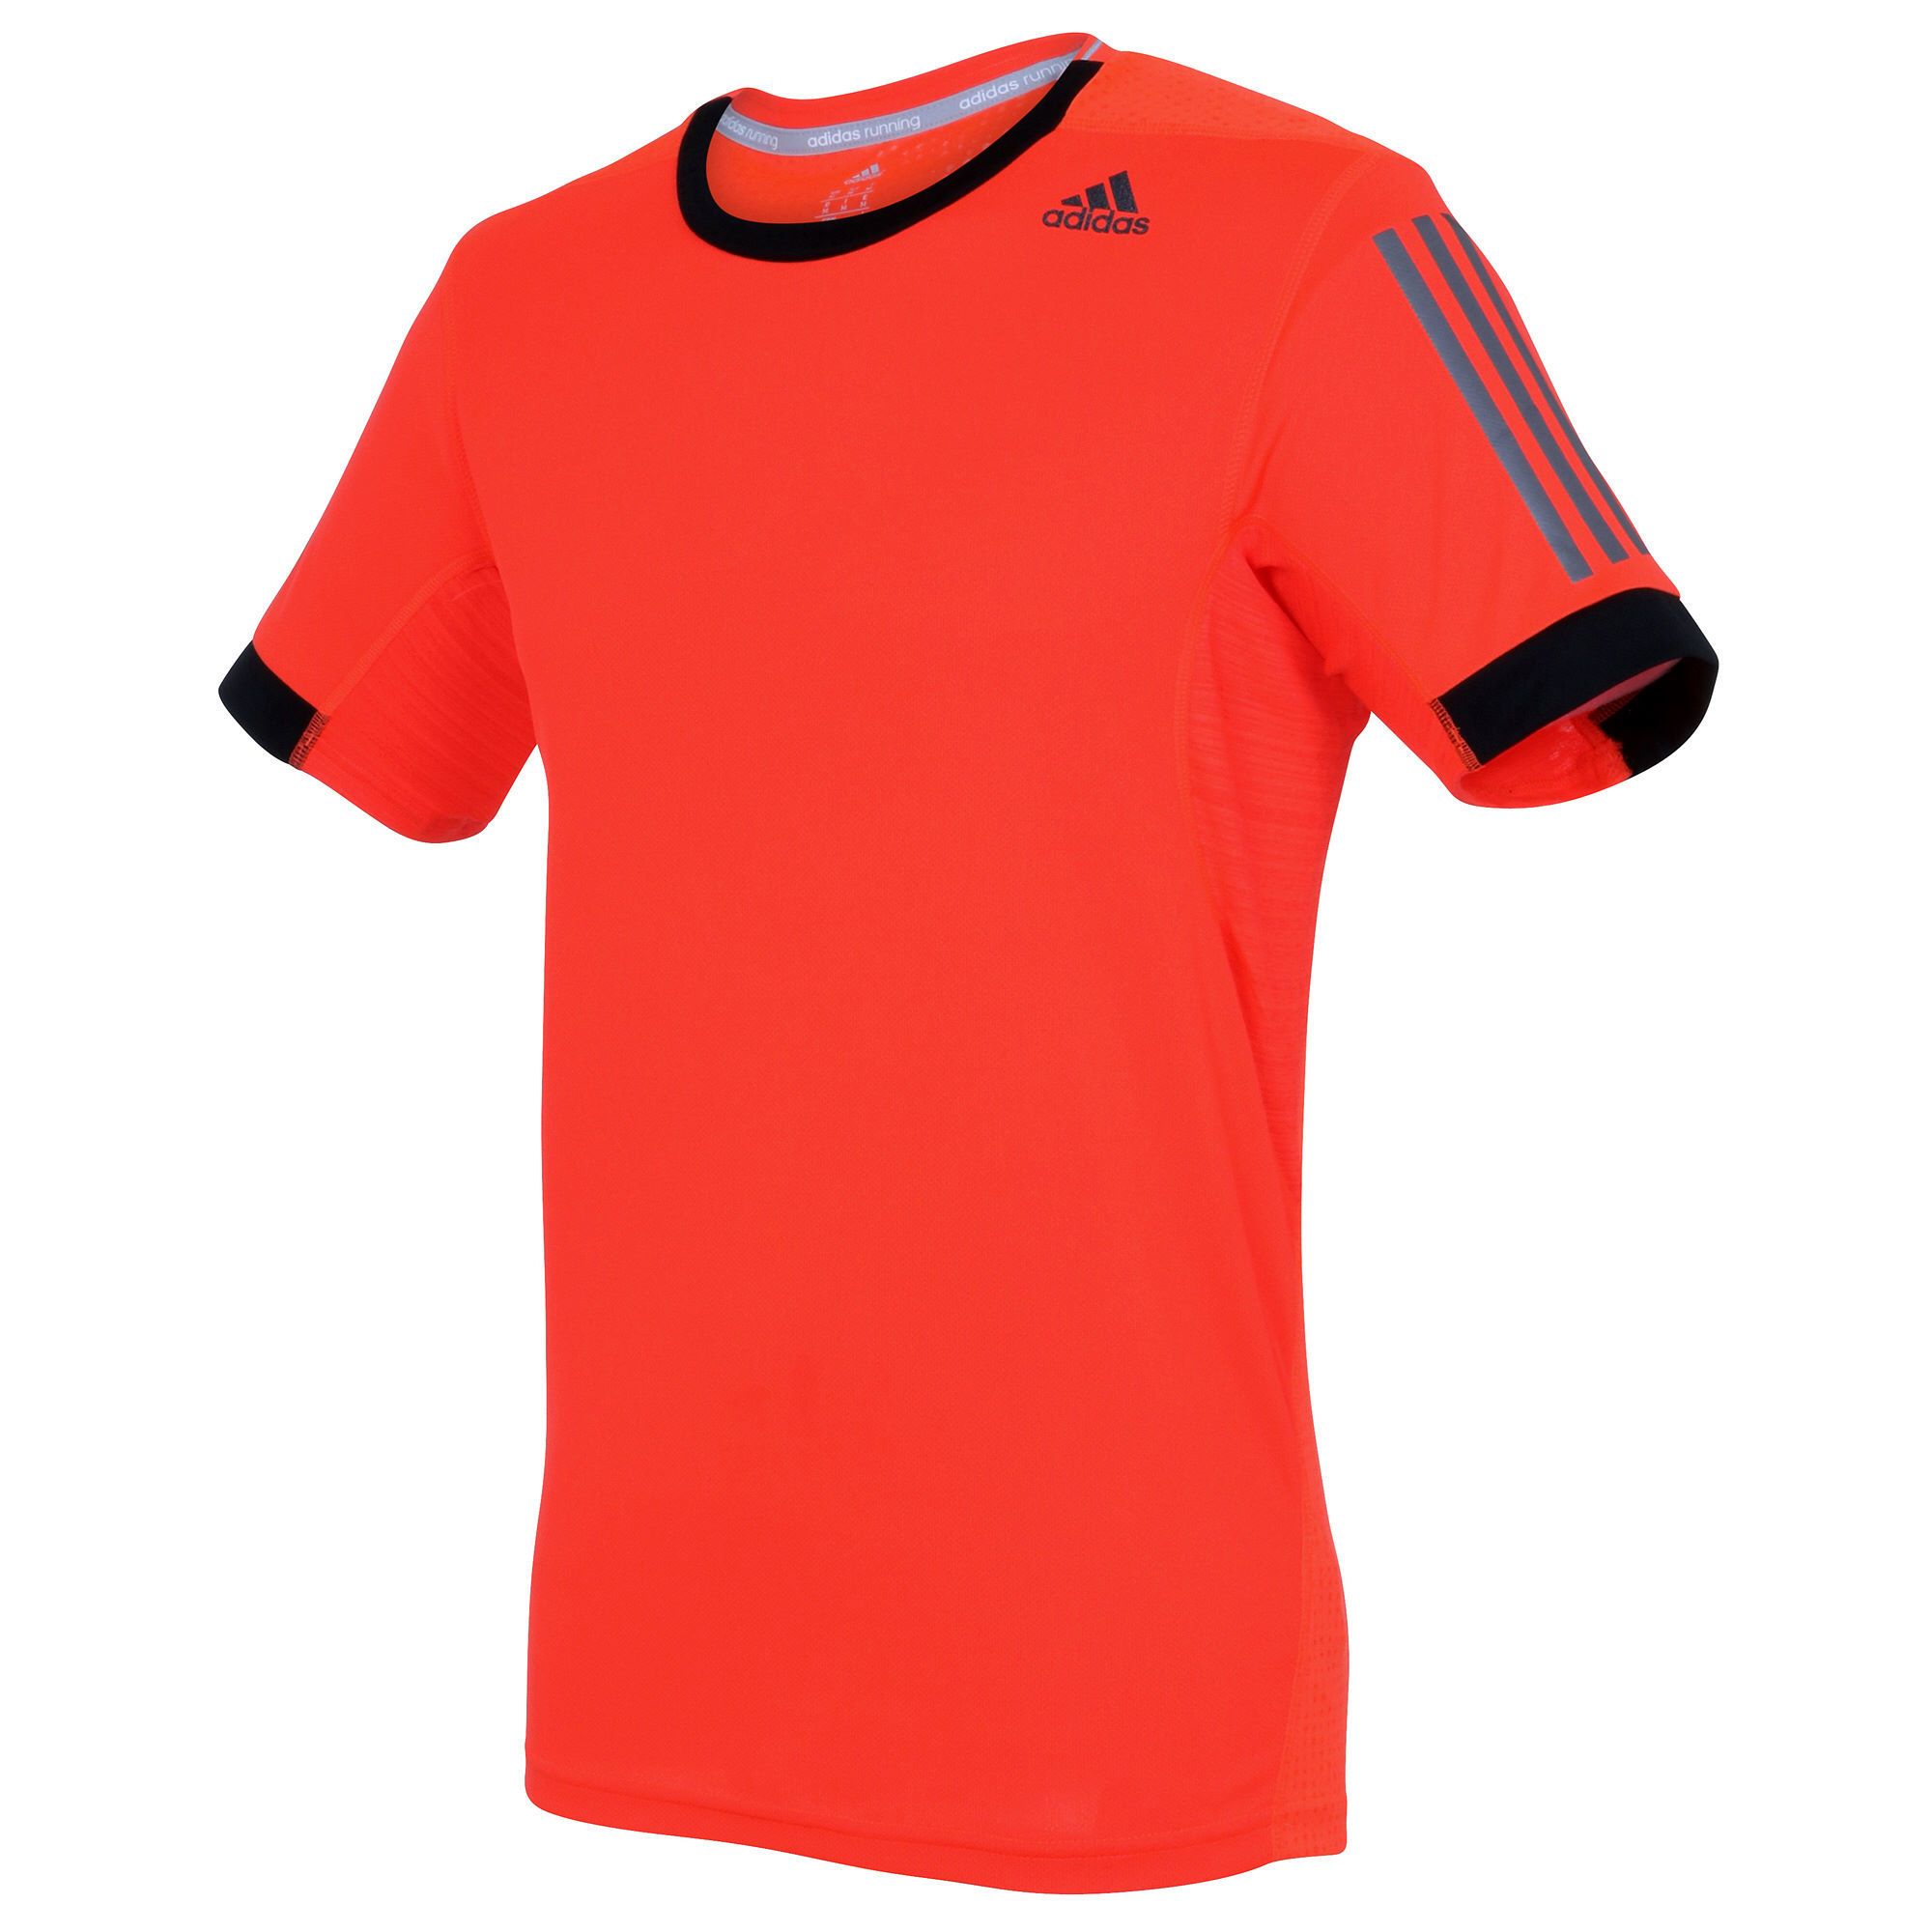  Adidas - Áo thun thể thao nam    SNS/SM S16251 (Đỏ) 